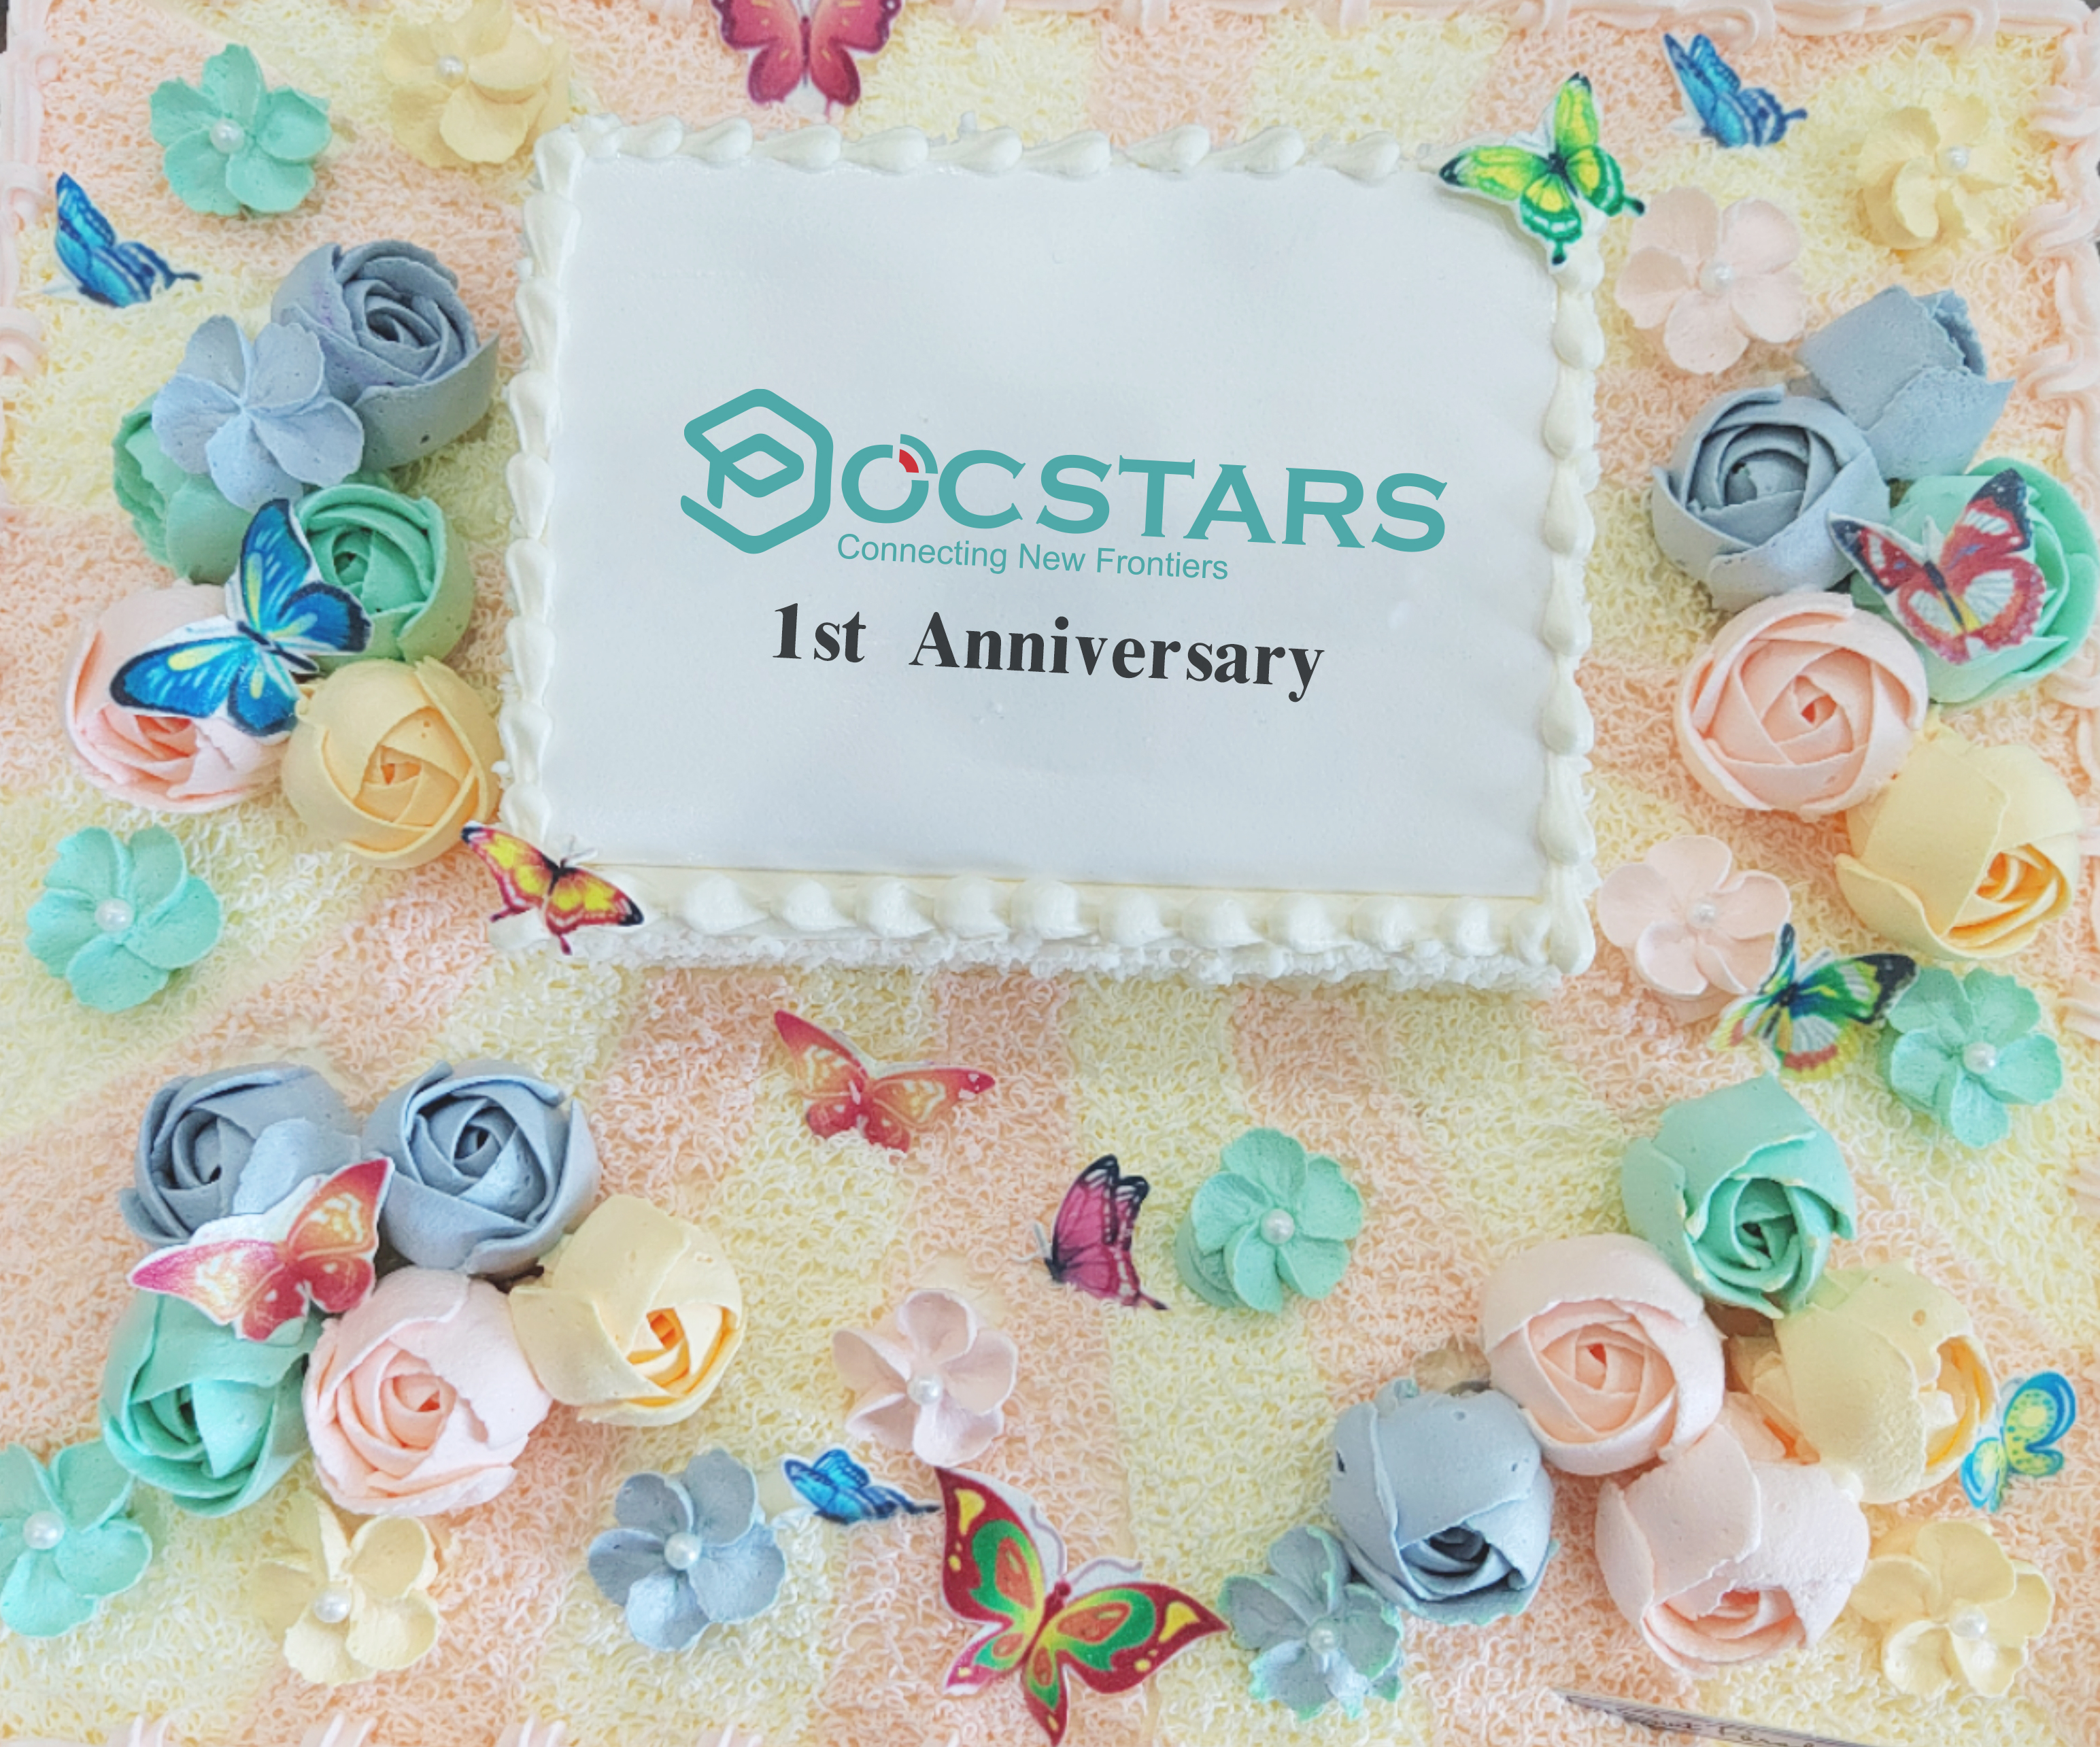 POCSTARS celebra el primer aniversario de su nueva oficina en Shenzhen